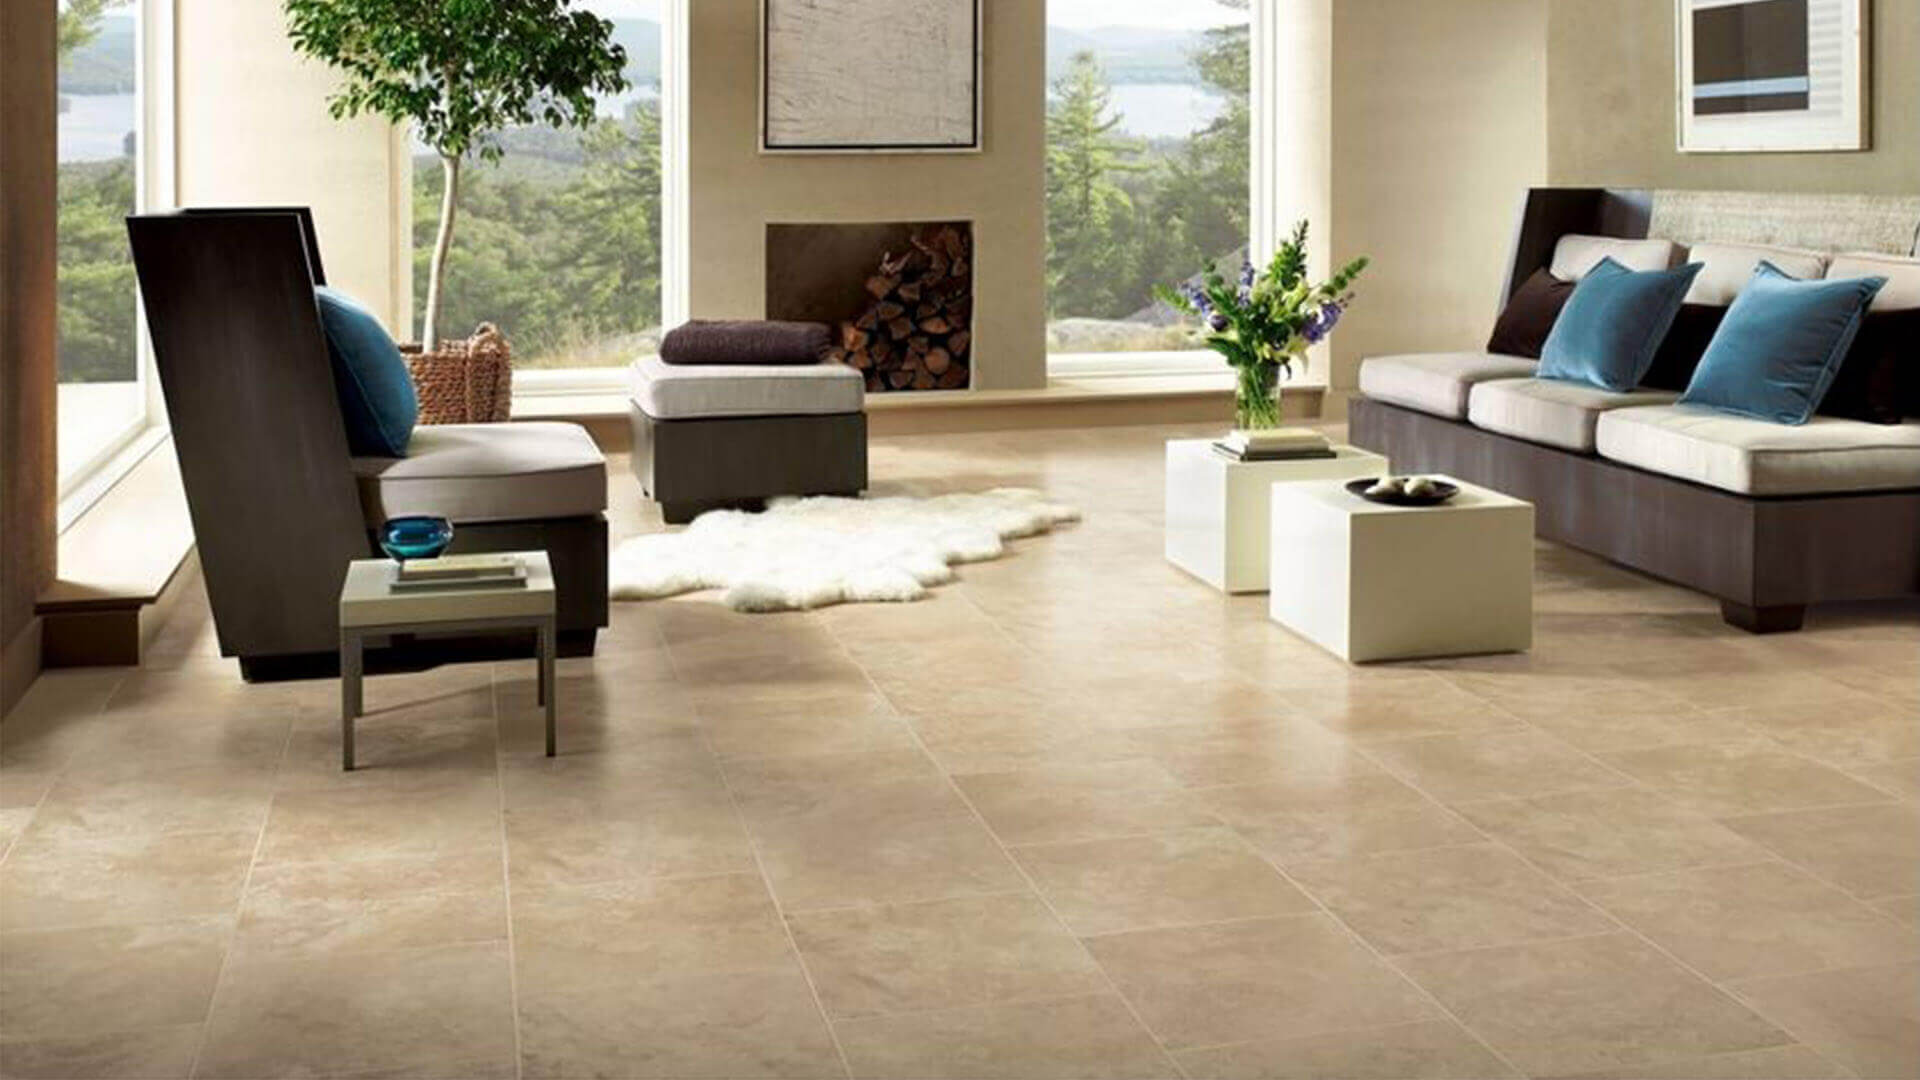 Floor Tiles For The Living Room